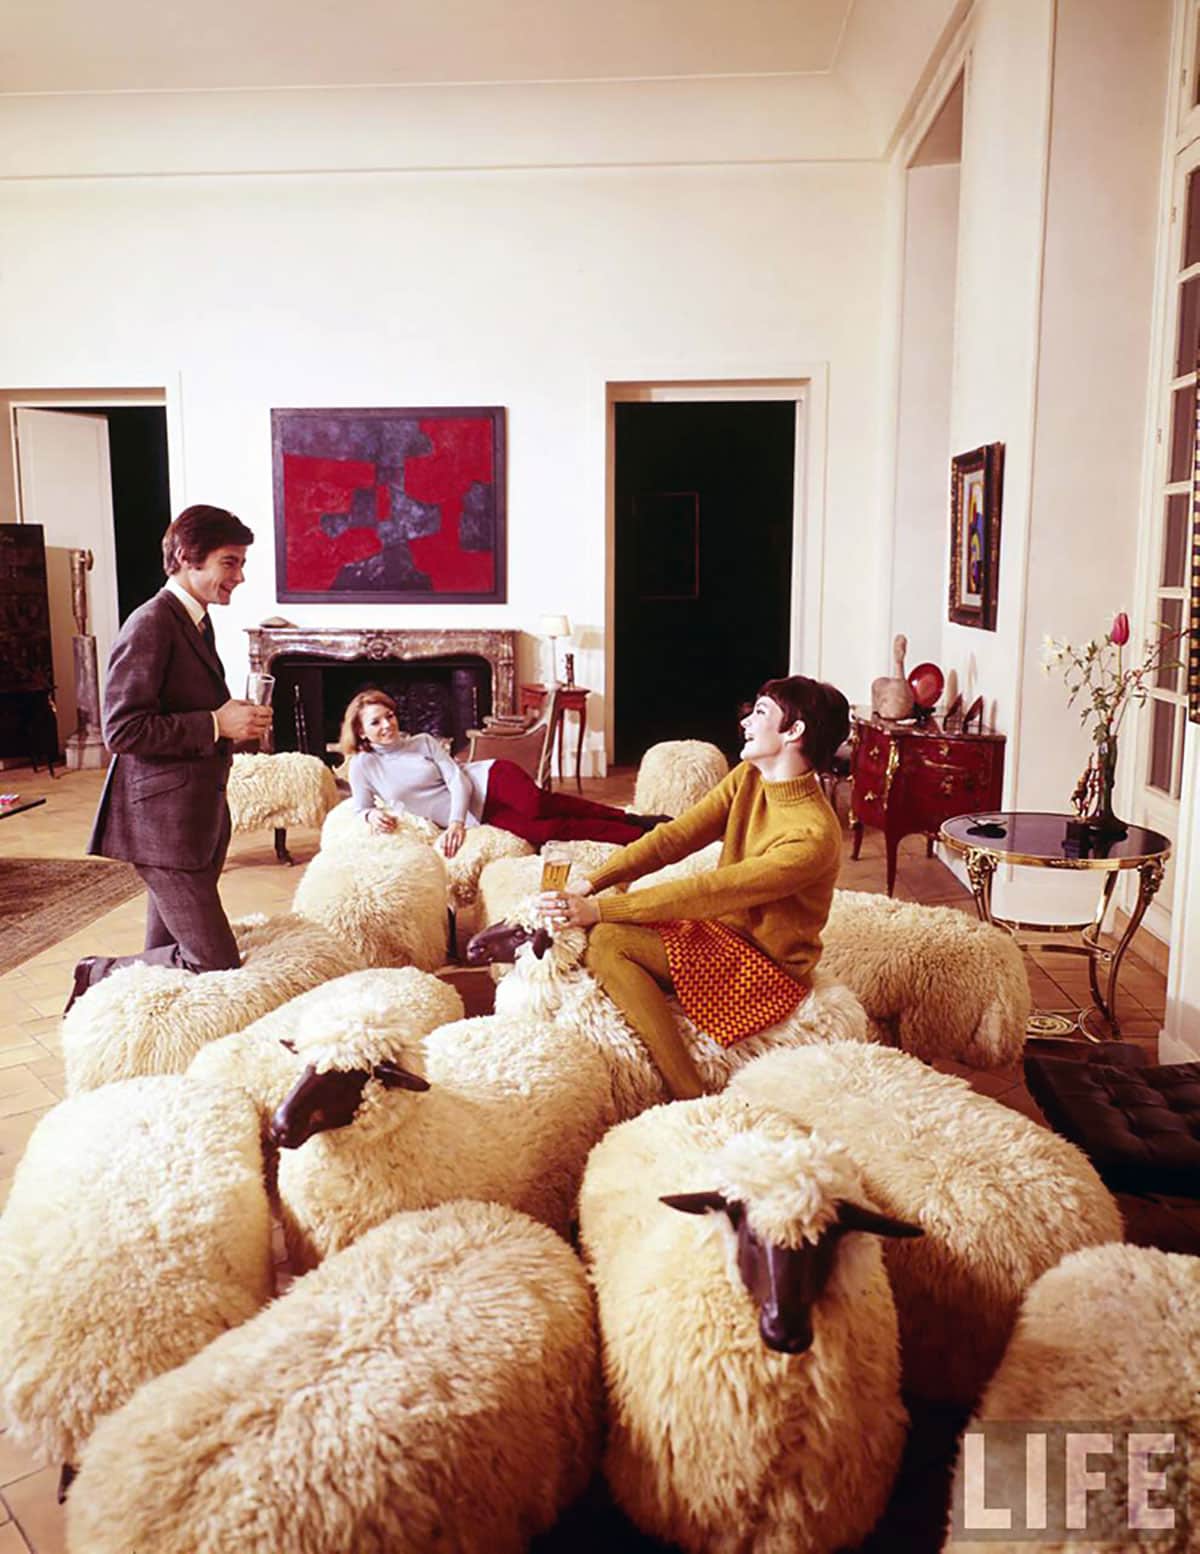 French artist François-Xavier Lalanne made a statement at the 1965 Salon de la Jeune Peinture in Paris with 24 sheep